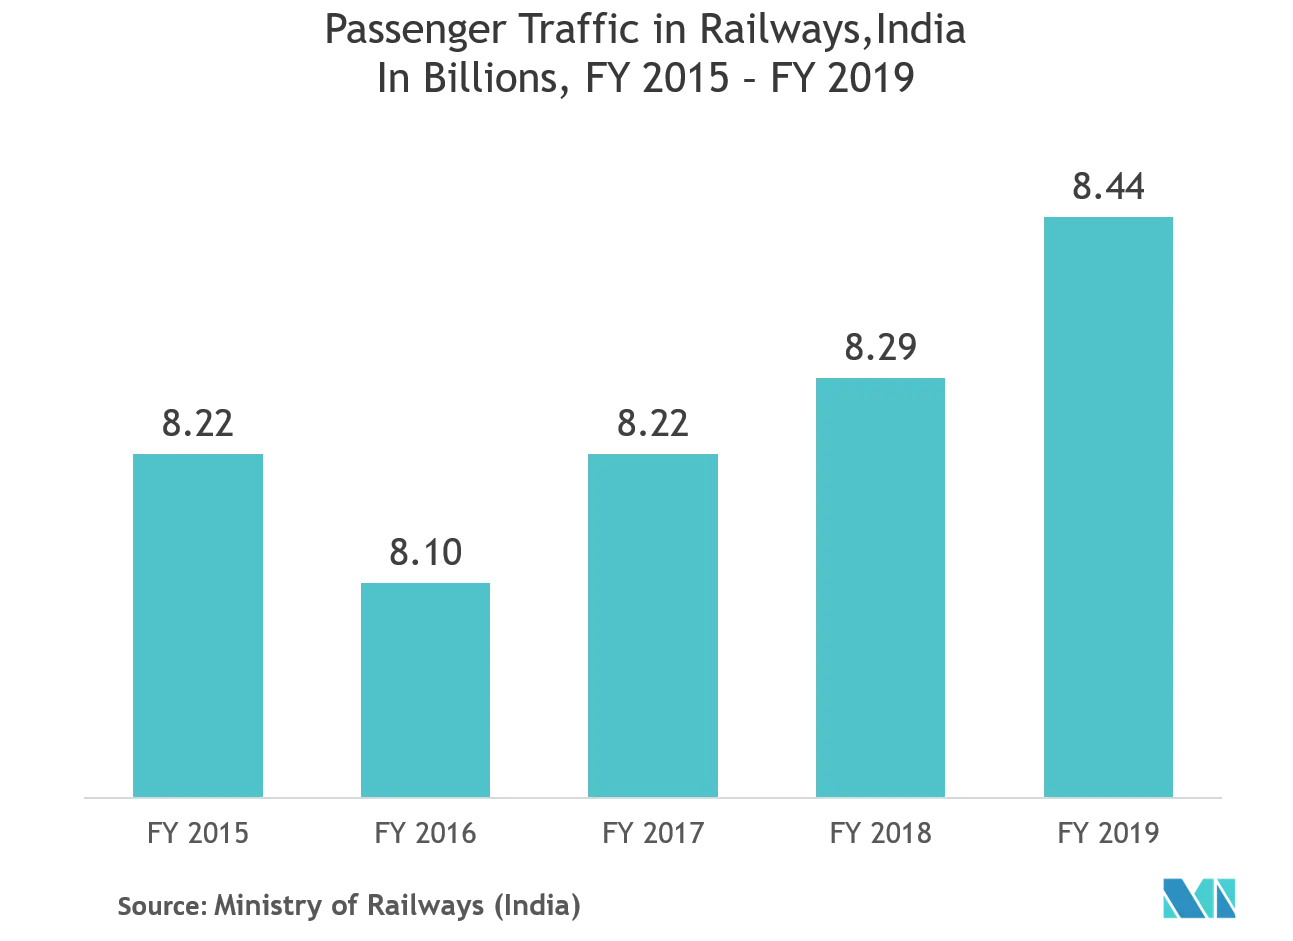 Mercado de sistemas de gestión ferroviaria - Tráfico de pasajeros en ferrocarriles, India en miles de millones, año fiscal 2025 - 2019